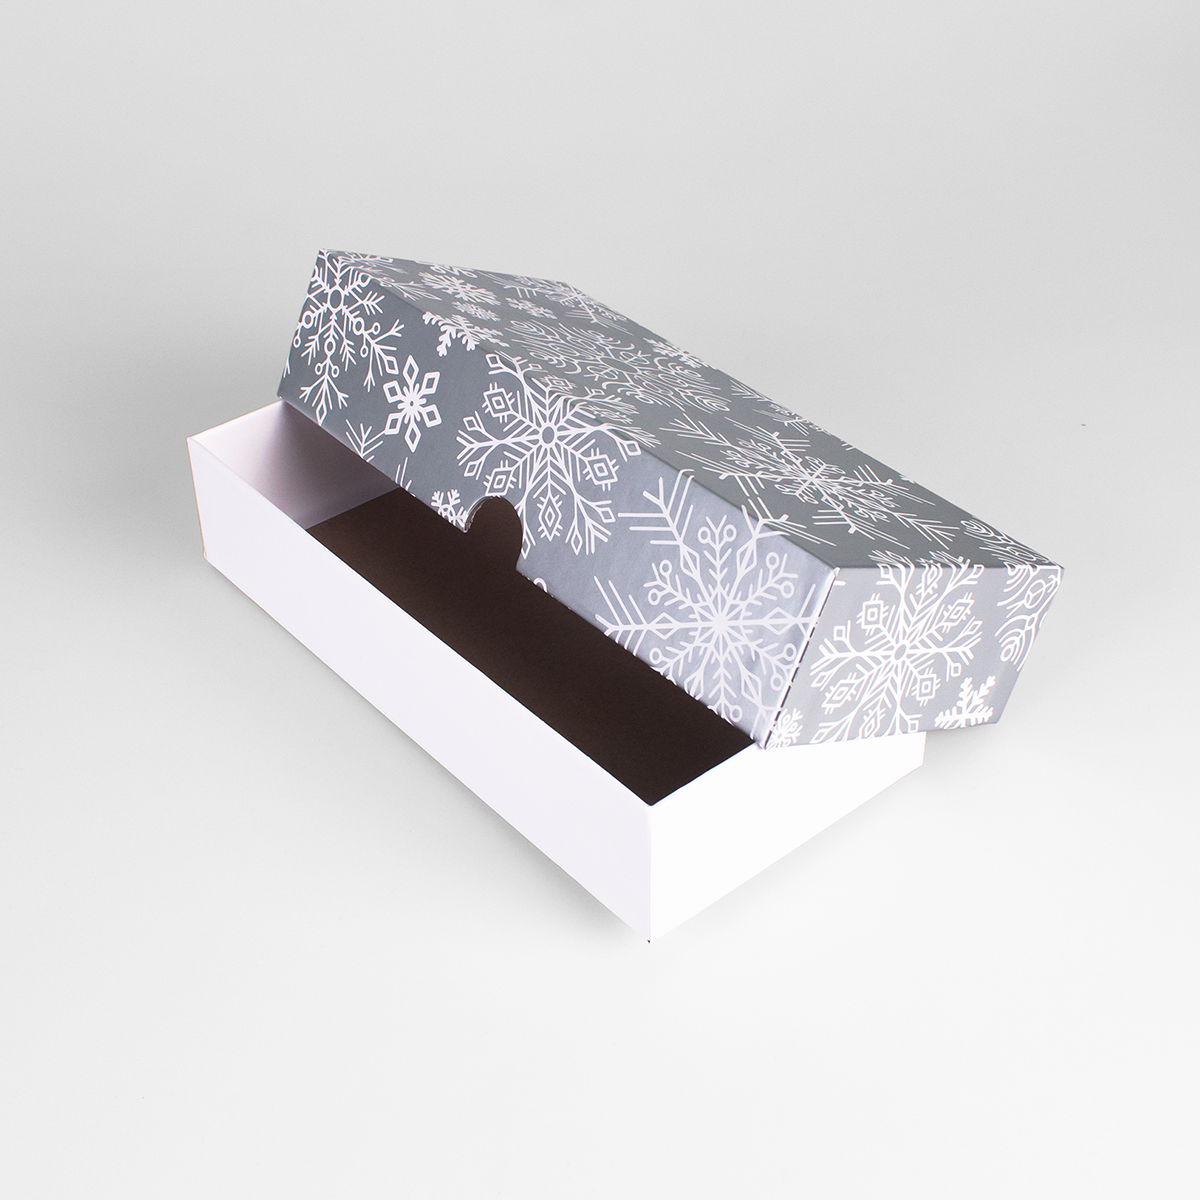 Подарочная коробка крышка-дно, 21.5 x 10.5 x 5 см. "Снежинки", серебряный, белый